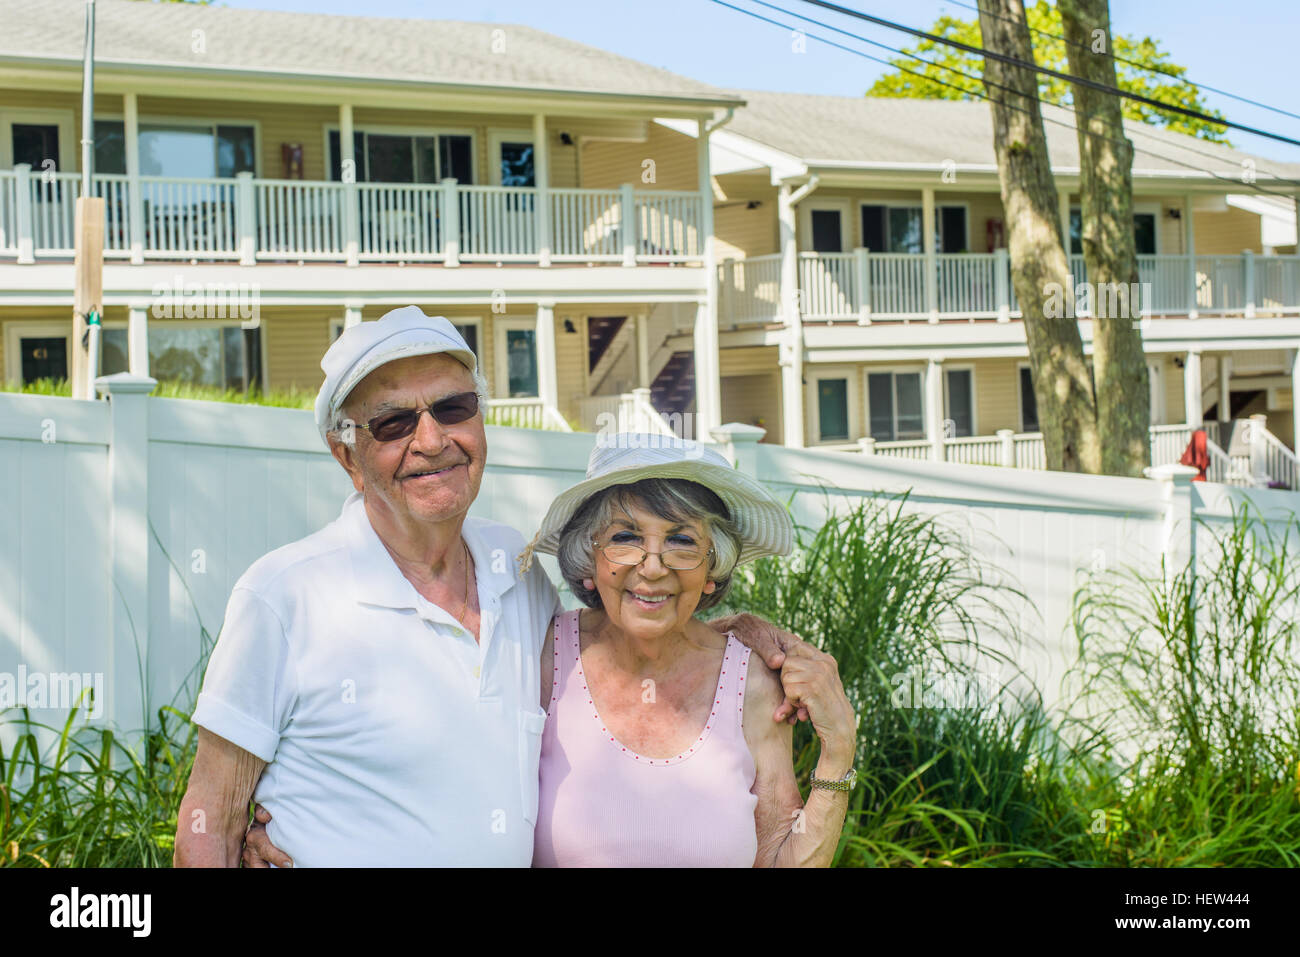 Happy senior couple on vacation, Hampton Bay, New York, USA Stock Photo